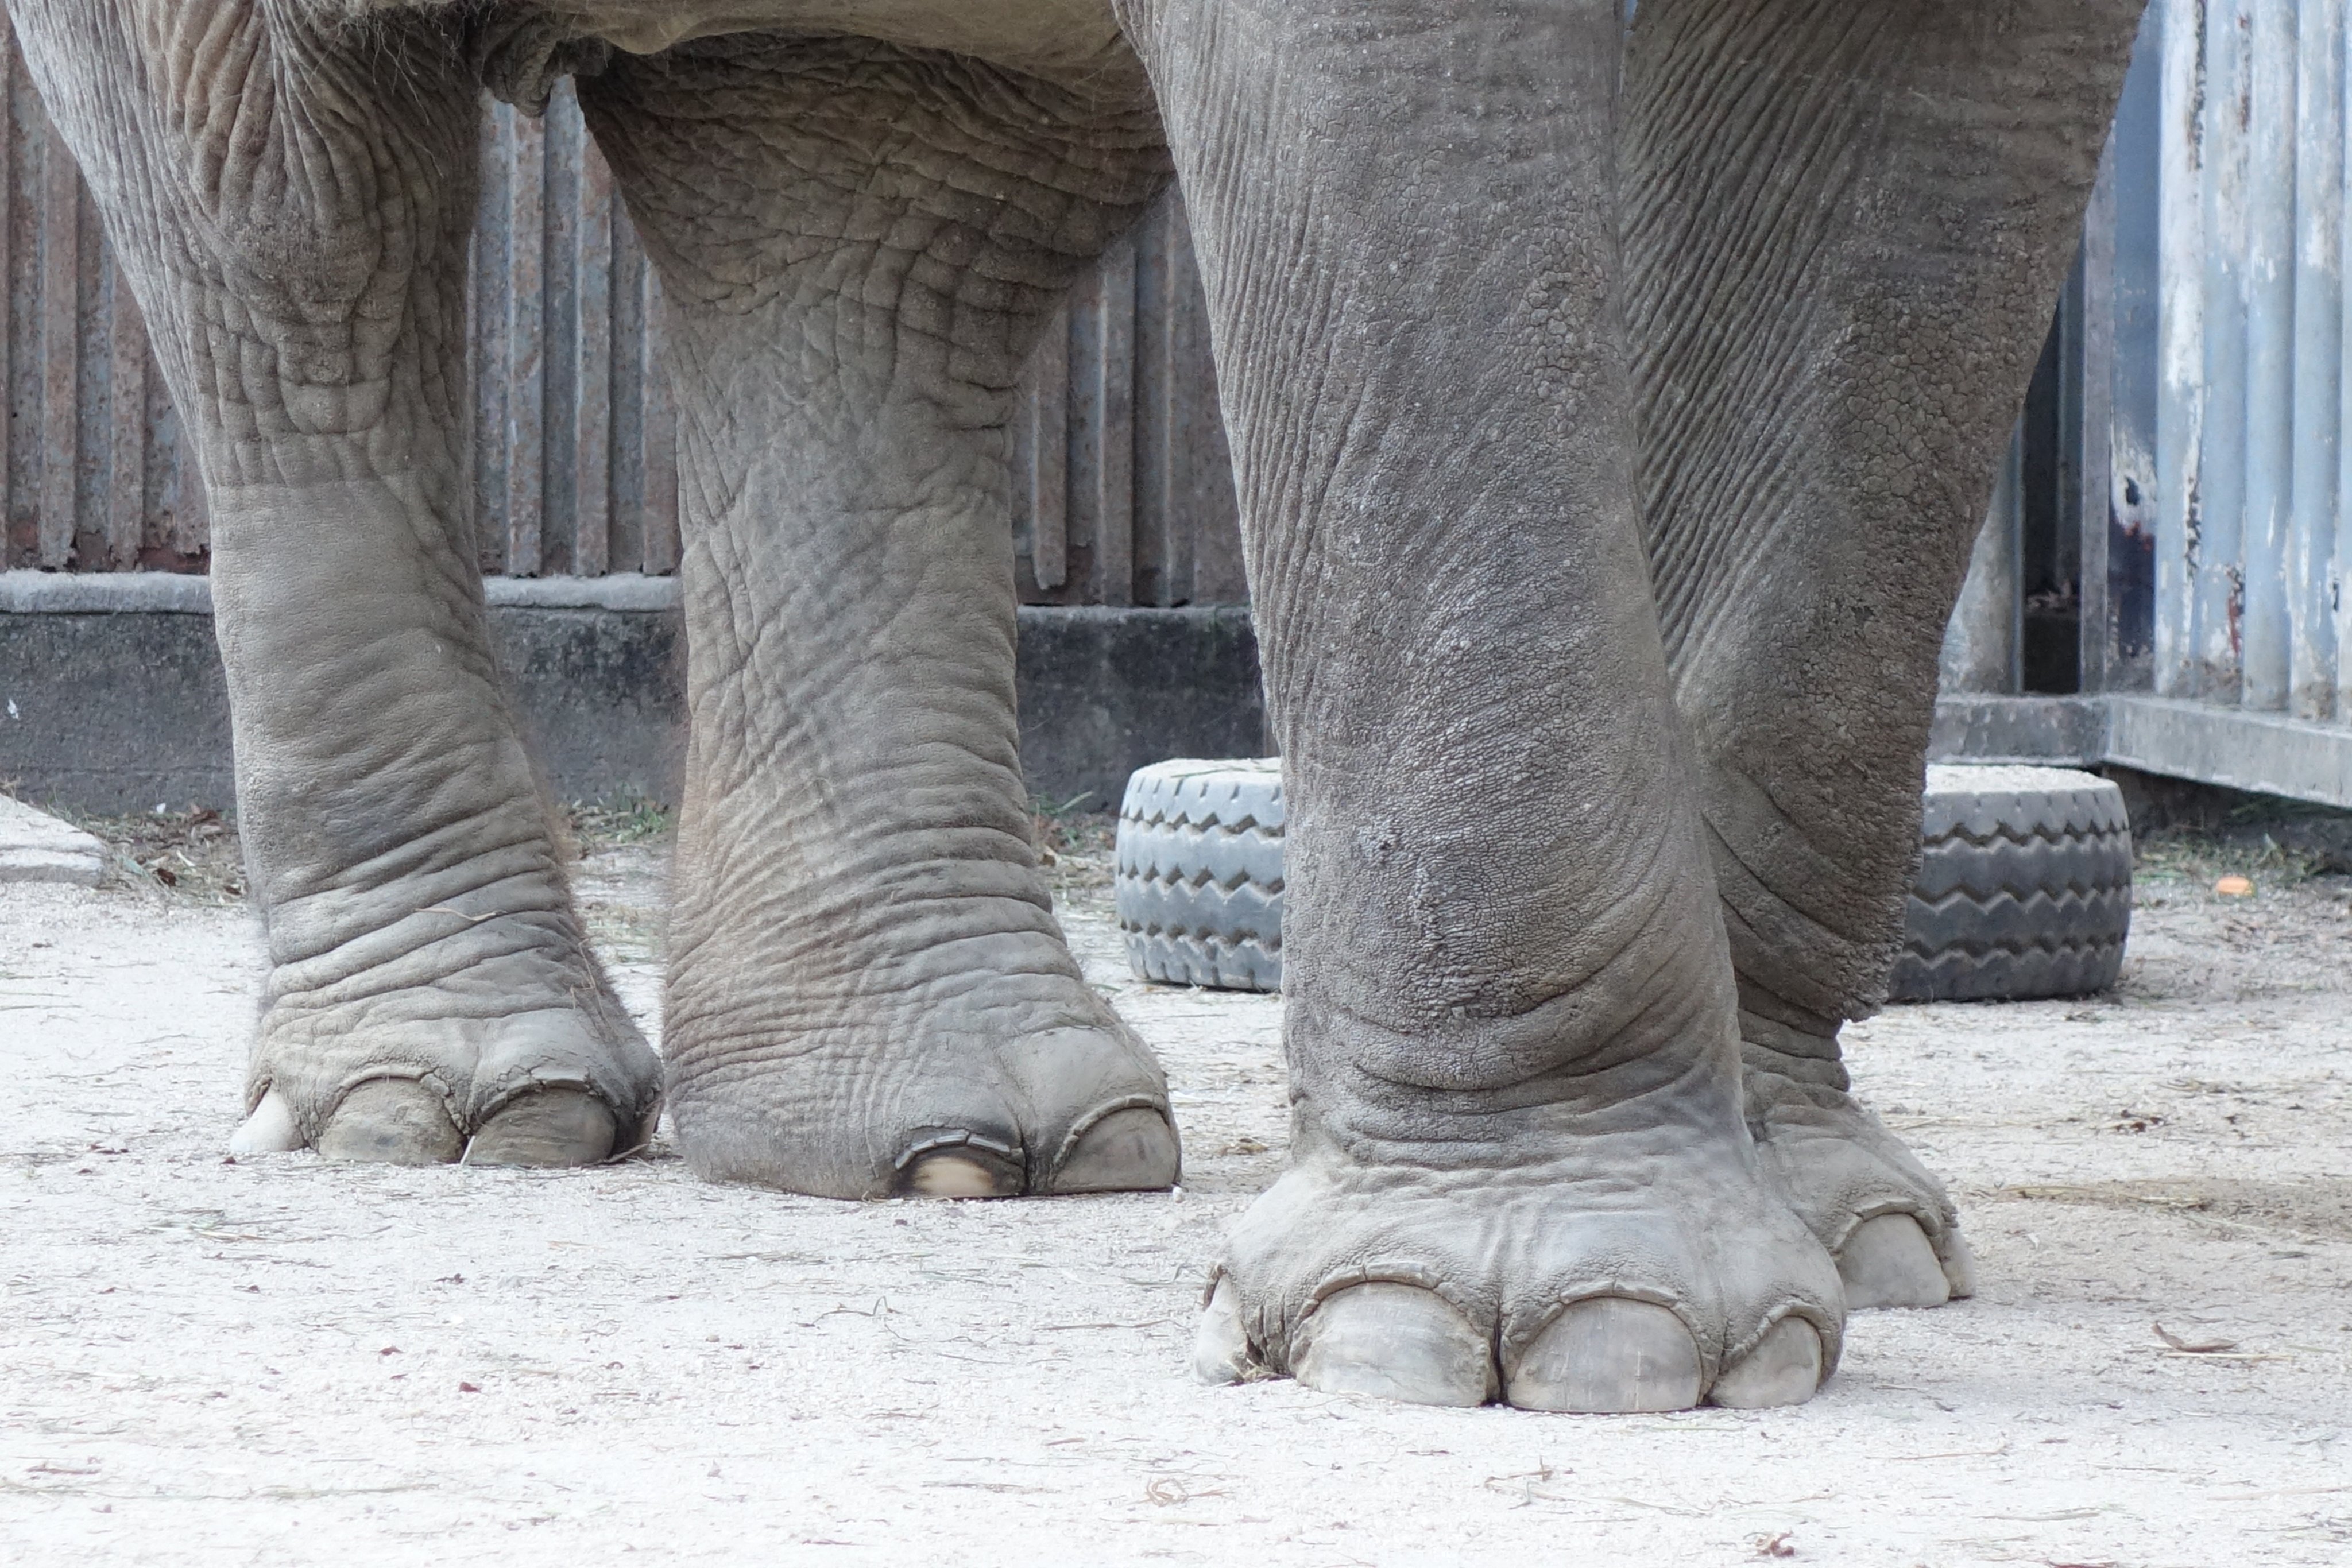 深草 Fukakusa ゾウ の足の裏は その体重を支えるために柔らかいクッションのようになっていて まっすぐで堅いコンクリートの上で暮らしていると 脚の皮膚は角質化し ひび割れたり化膿したりします 起伏のある柔らかい地面にする必要があります